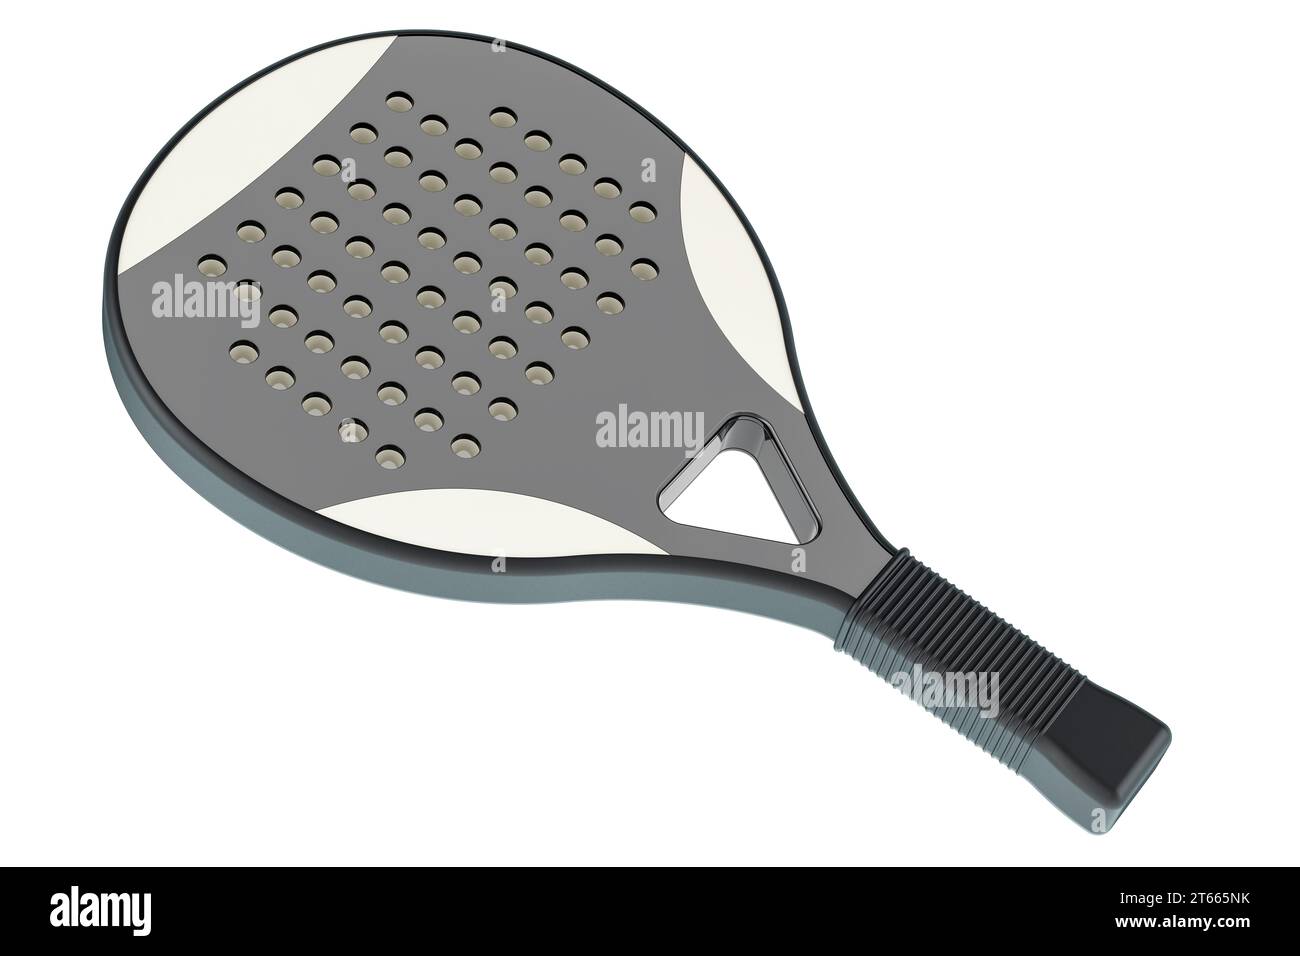 Raquette de paddle tennis, rendu 3D isolé sur fond blanc Banque D'Images